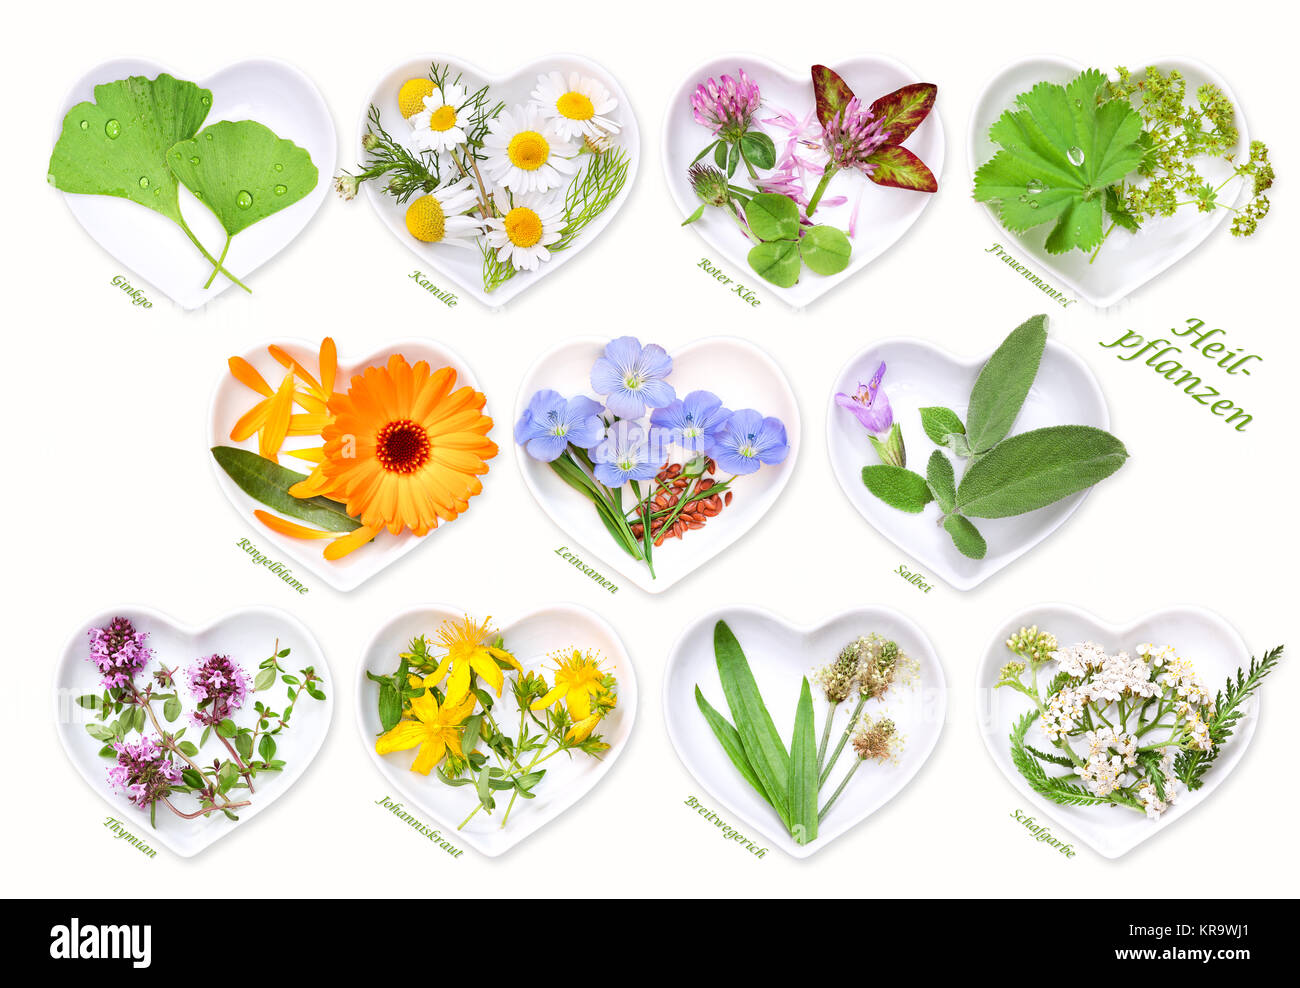 medicina alternativa con plantas medicinales 1 Foto de stock